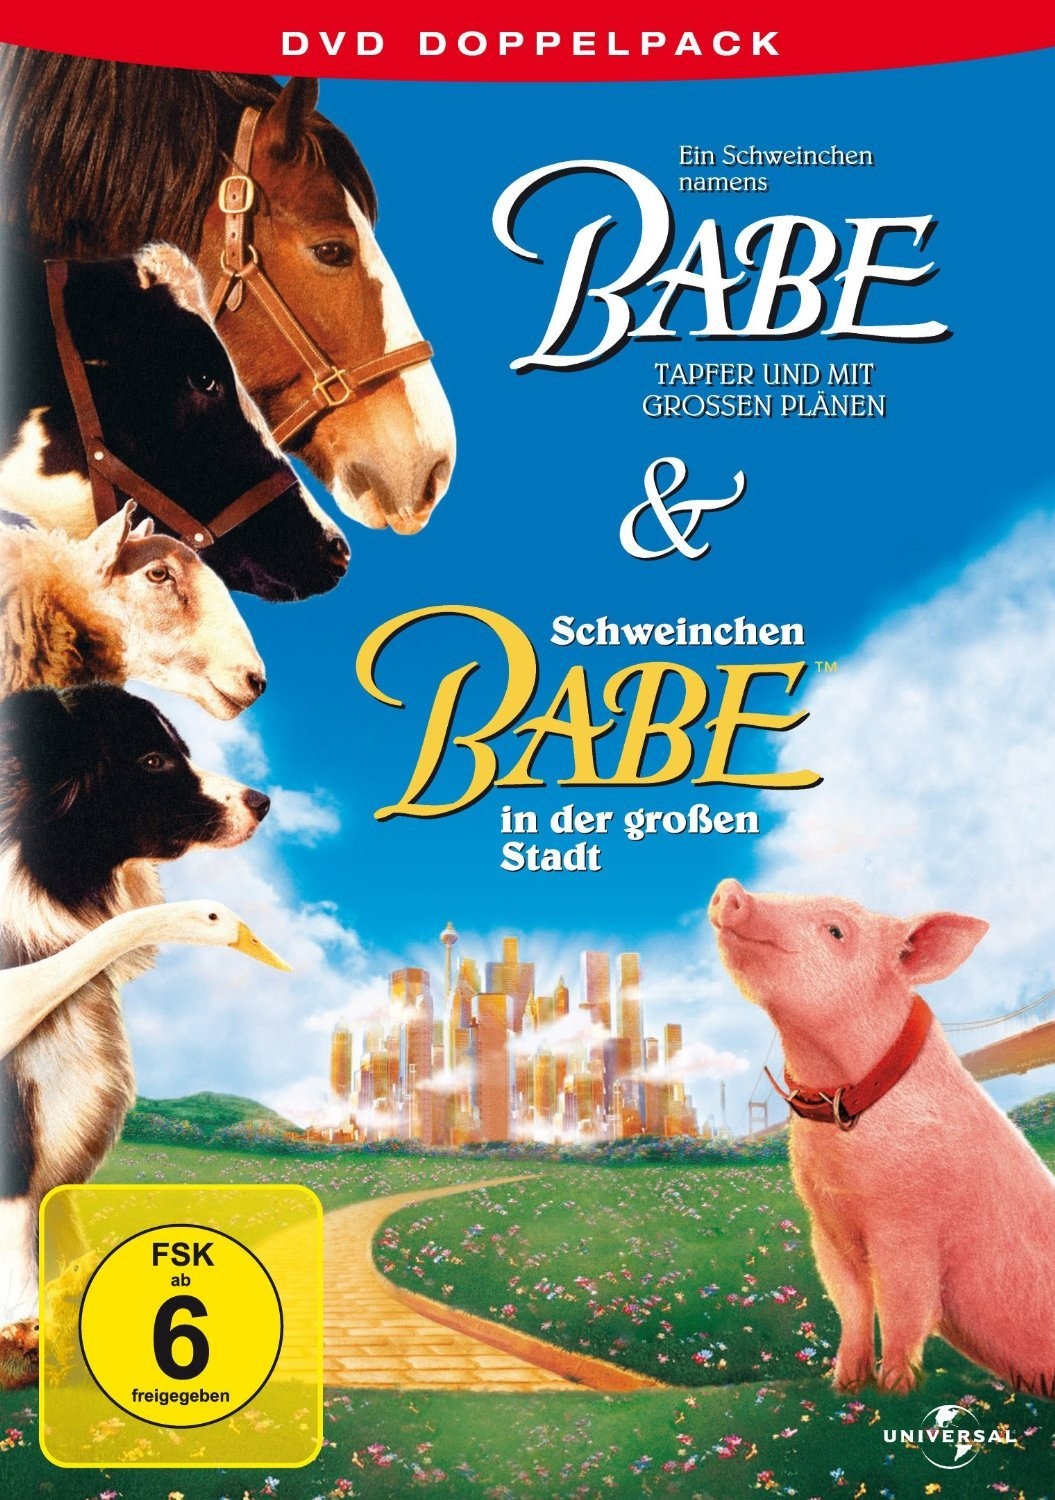 Ein Schweinchen Namens Babe & Schweinchen Babe In Der Grossen Stadt (DVD)